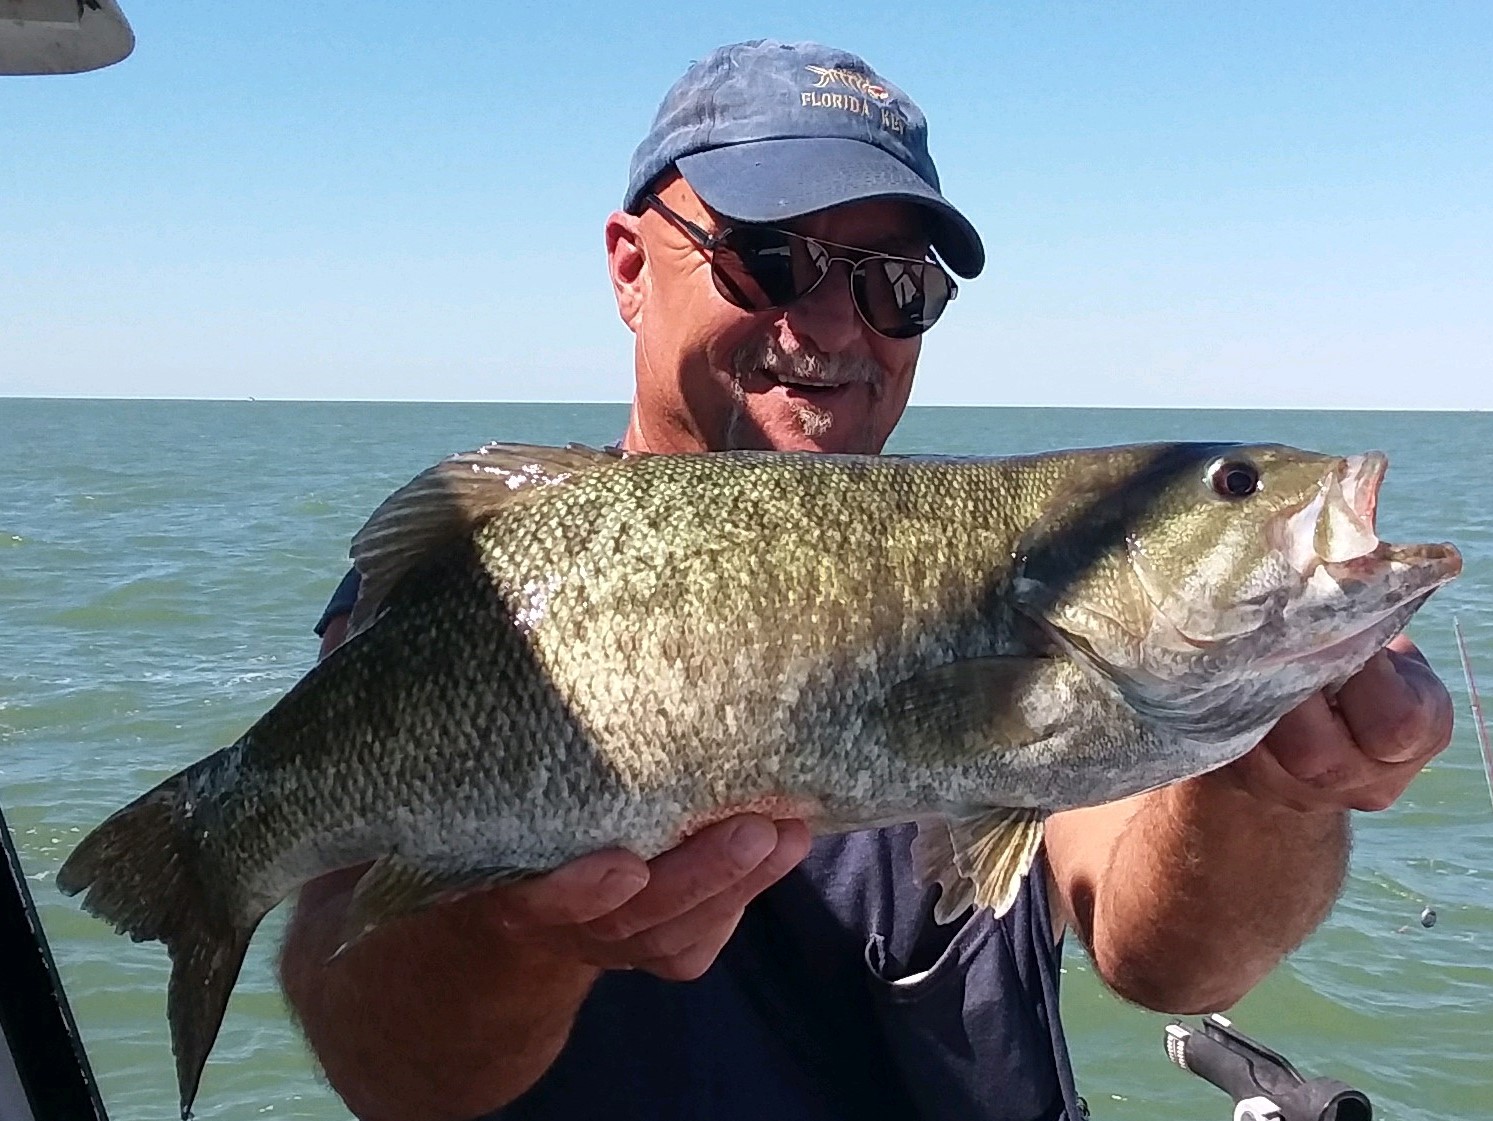 Lake Erie Bass fishing